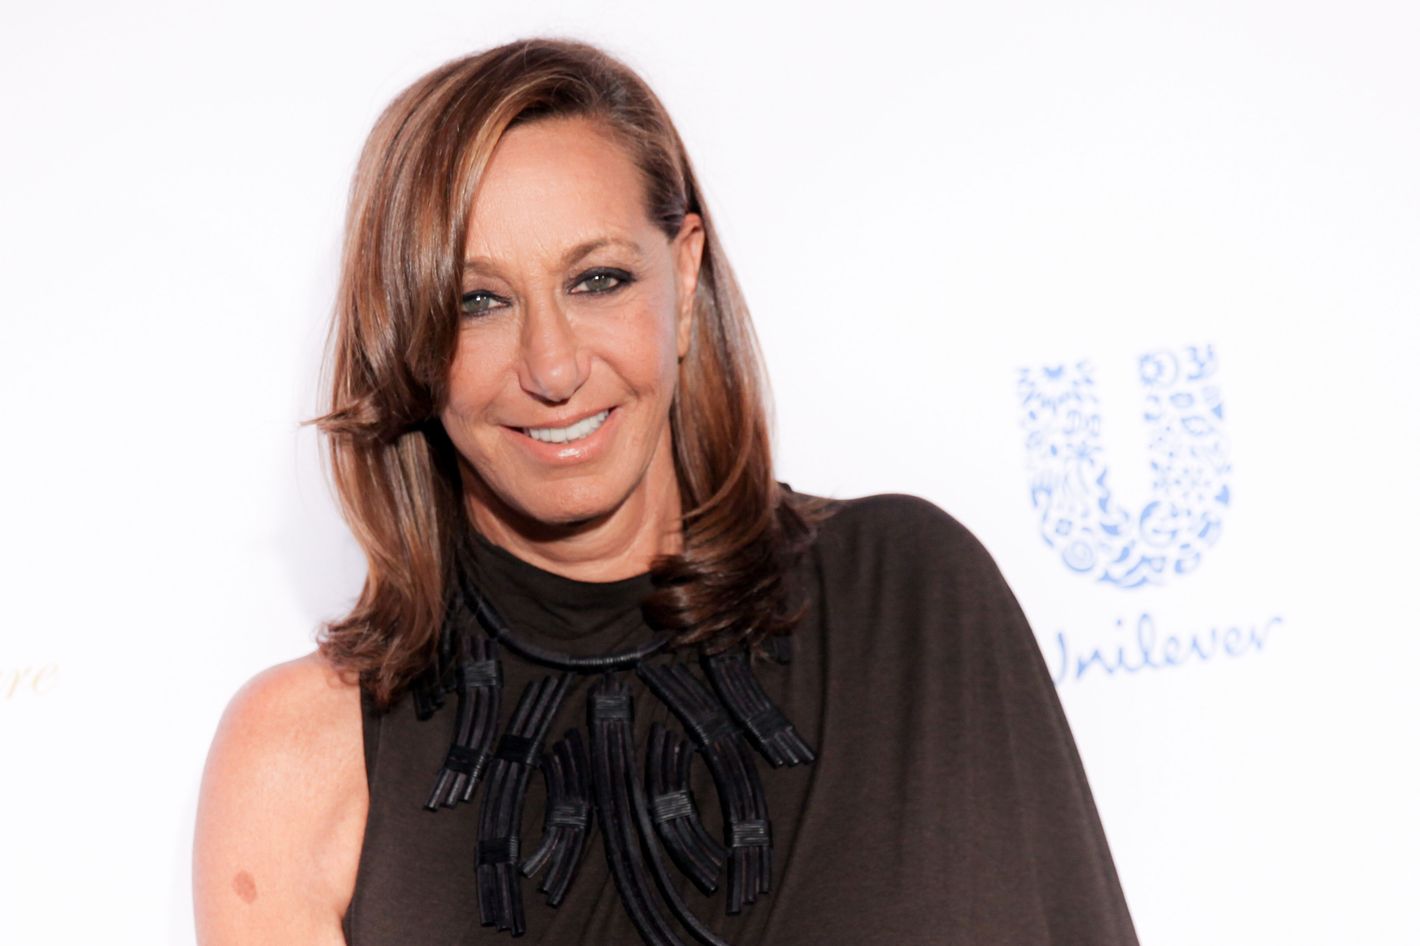 Donna Karan is no longer DKNY's chief designer